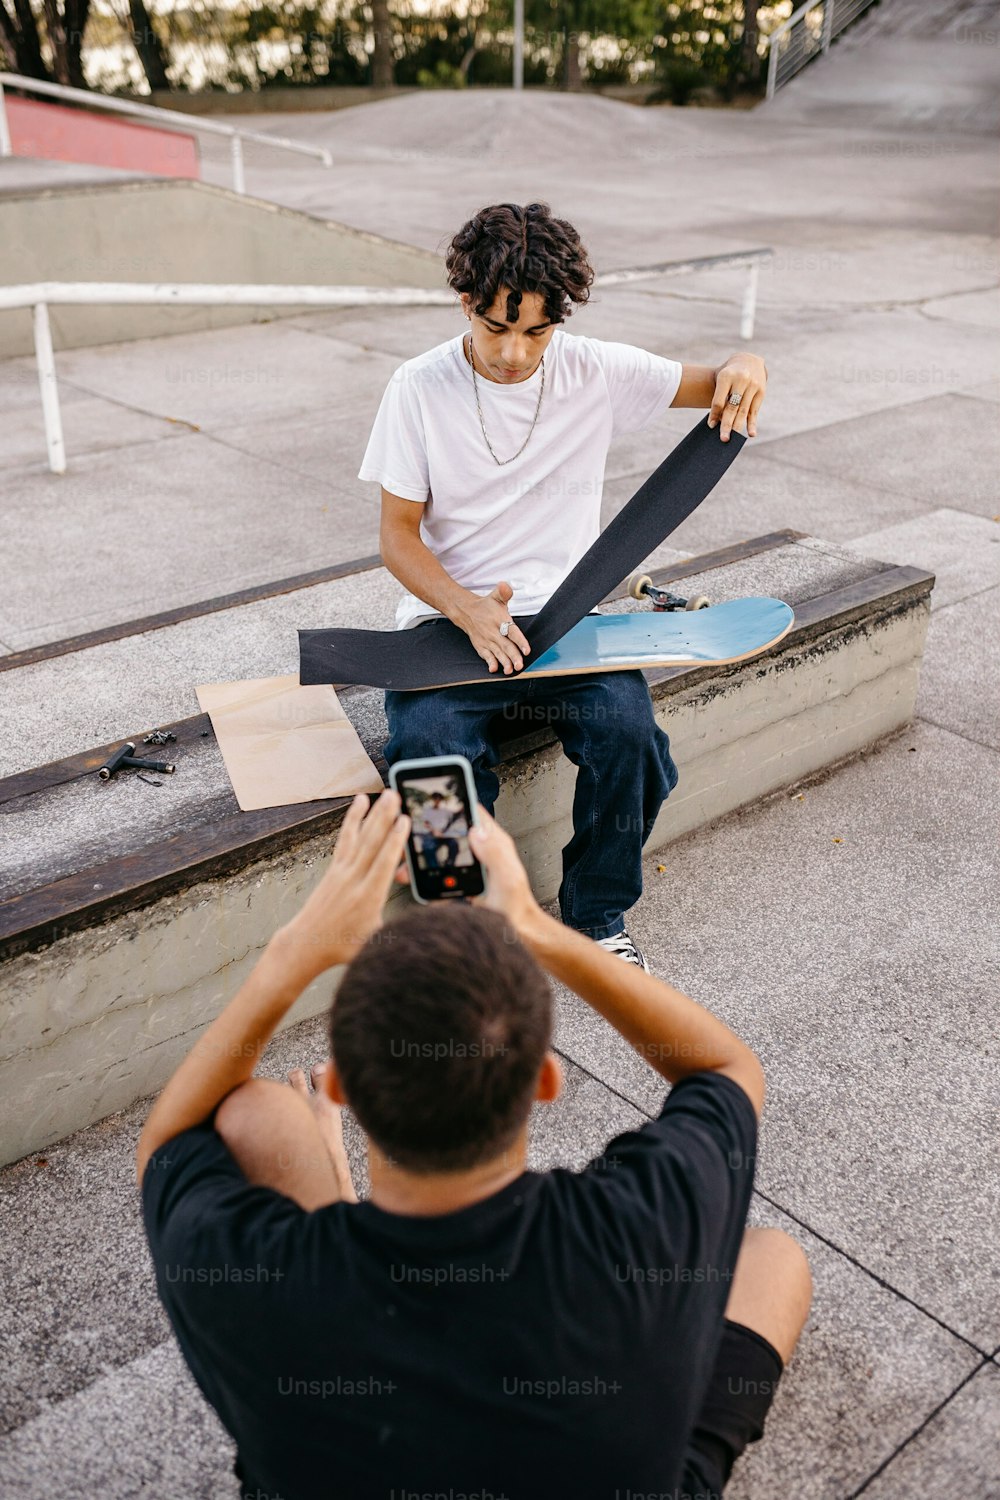 Un uomo che scatta una foto di uno skateboarder